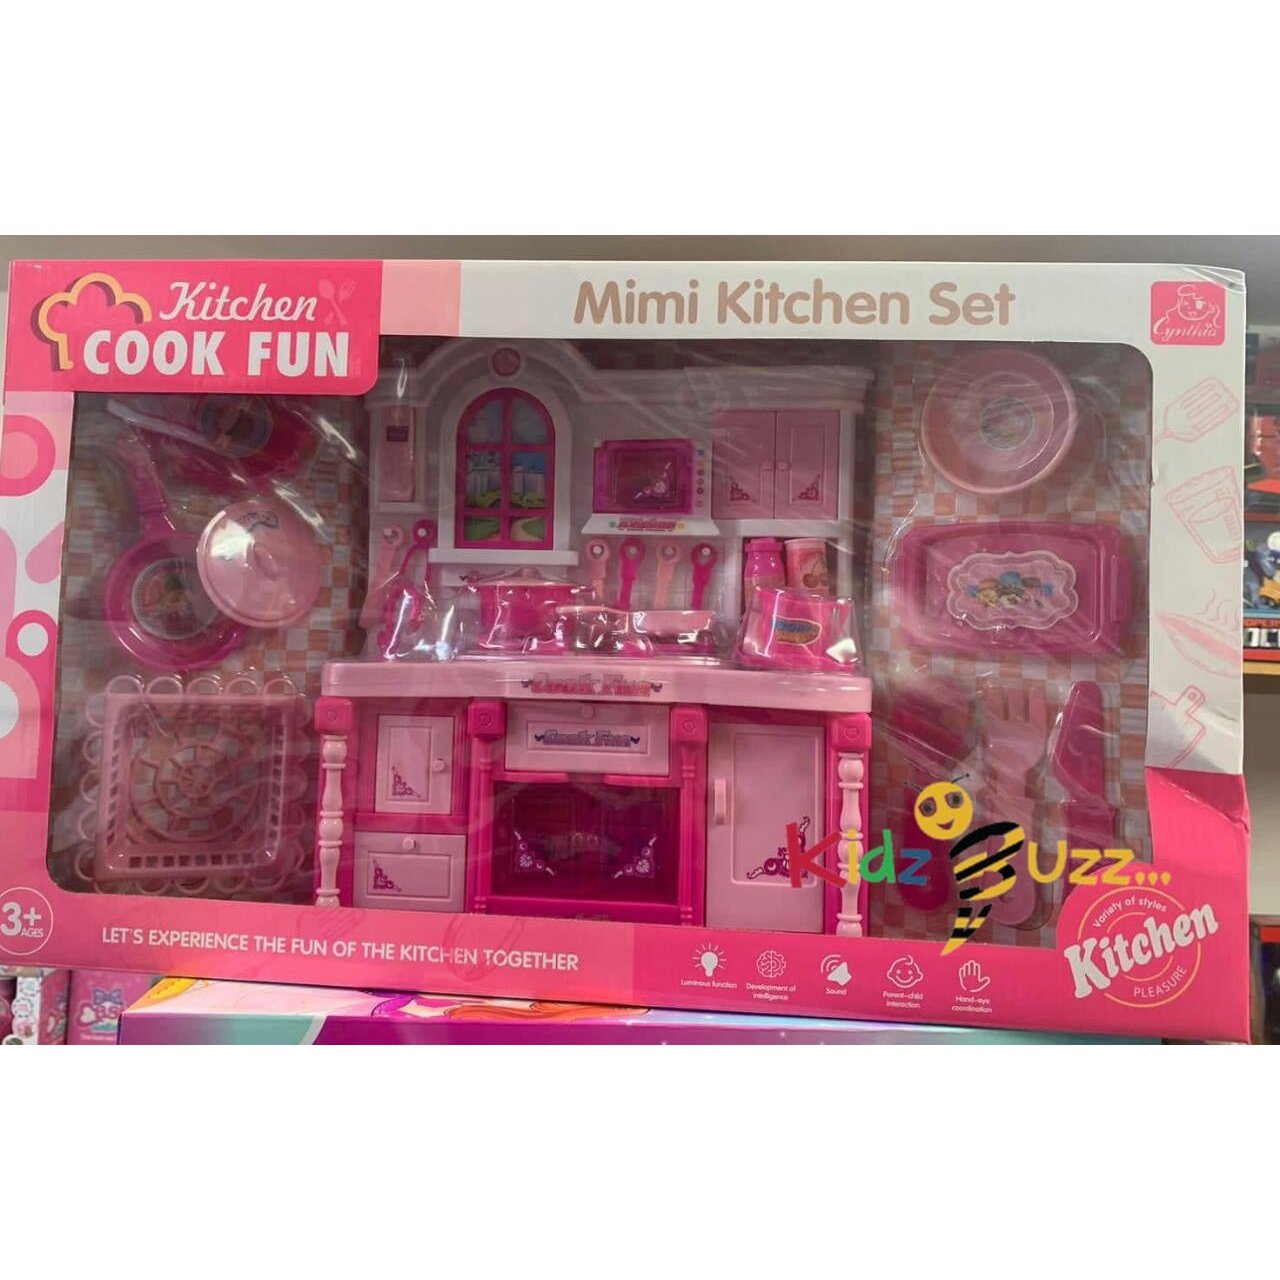 Mimi Kitchen Set